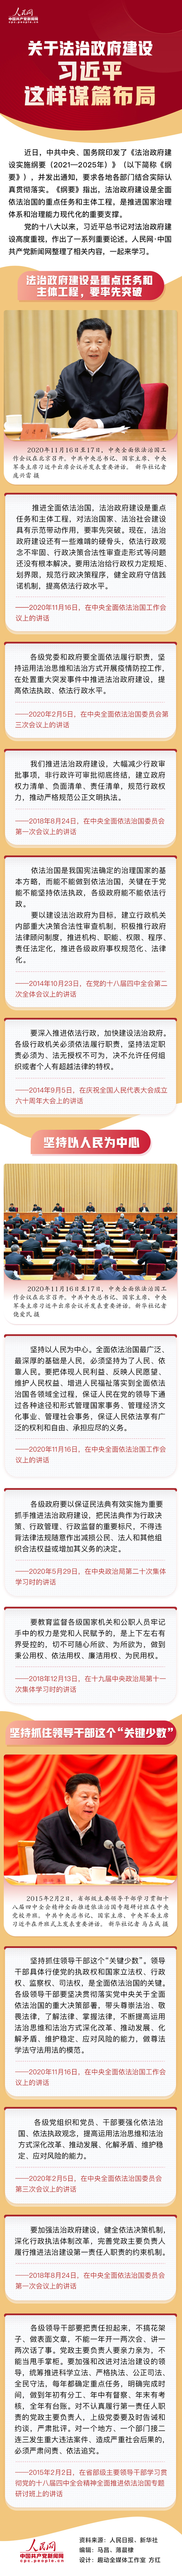 关于法治政府建设 习近平这样谋篇布局 来源：人民网-中国共产党新闻网.jpg